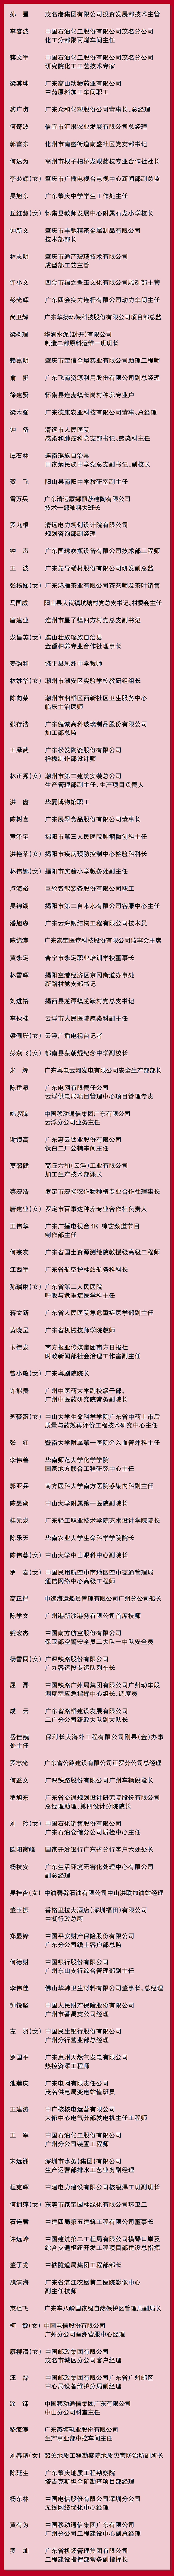 广东省劳动模范名单--03.jpg